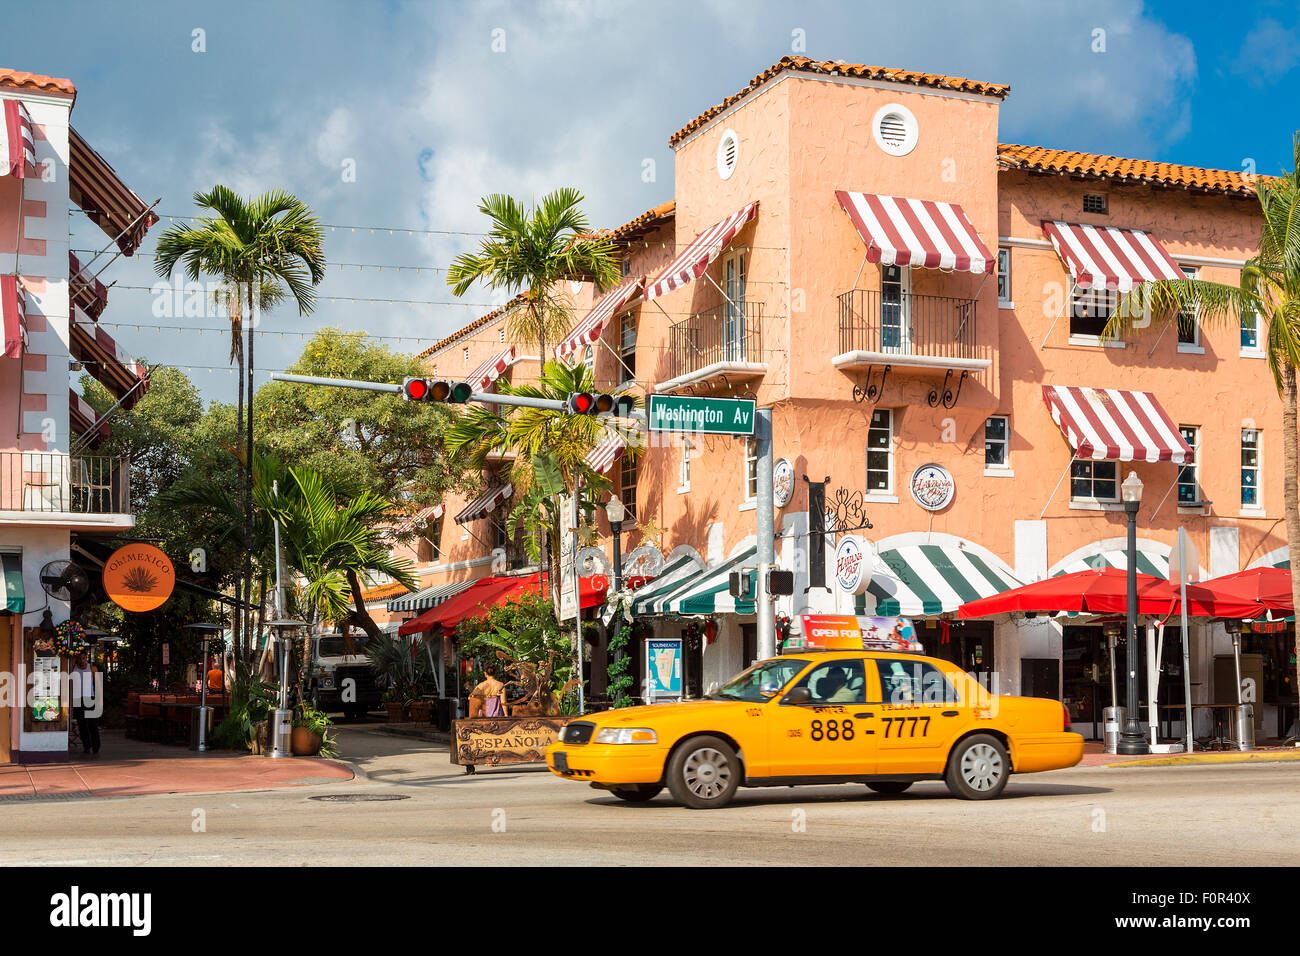 Espanola Way, South Beach, Miami, USA Banque D'Images